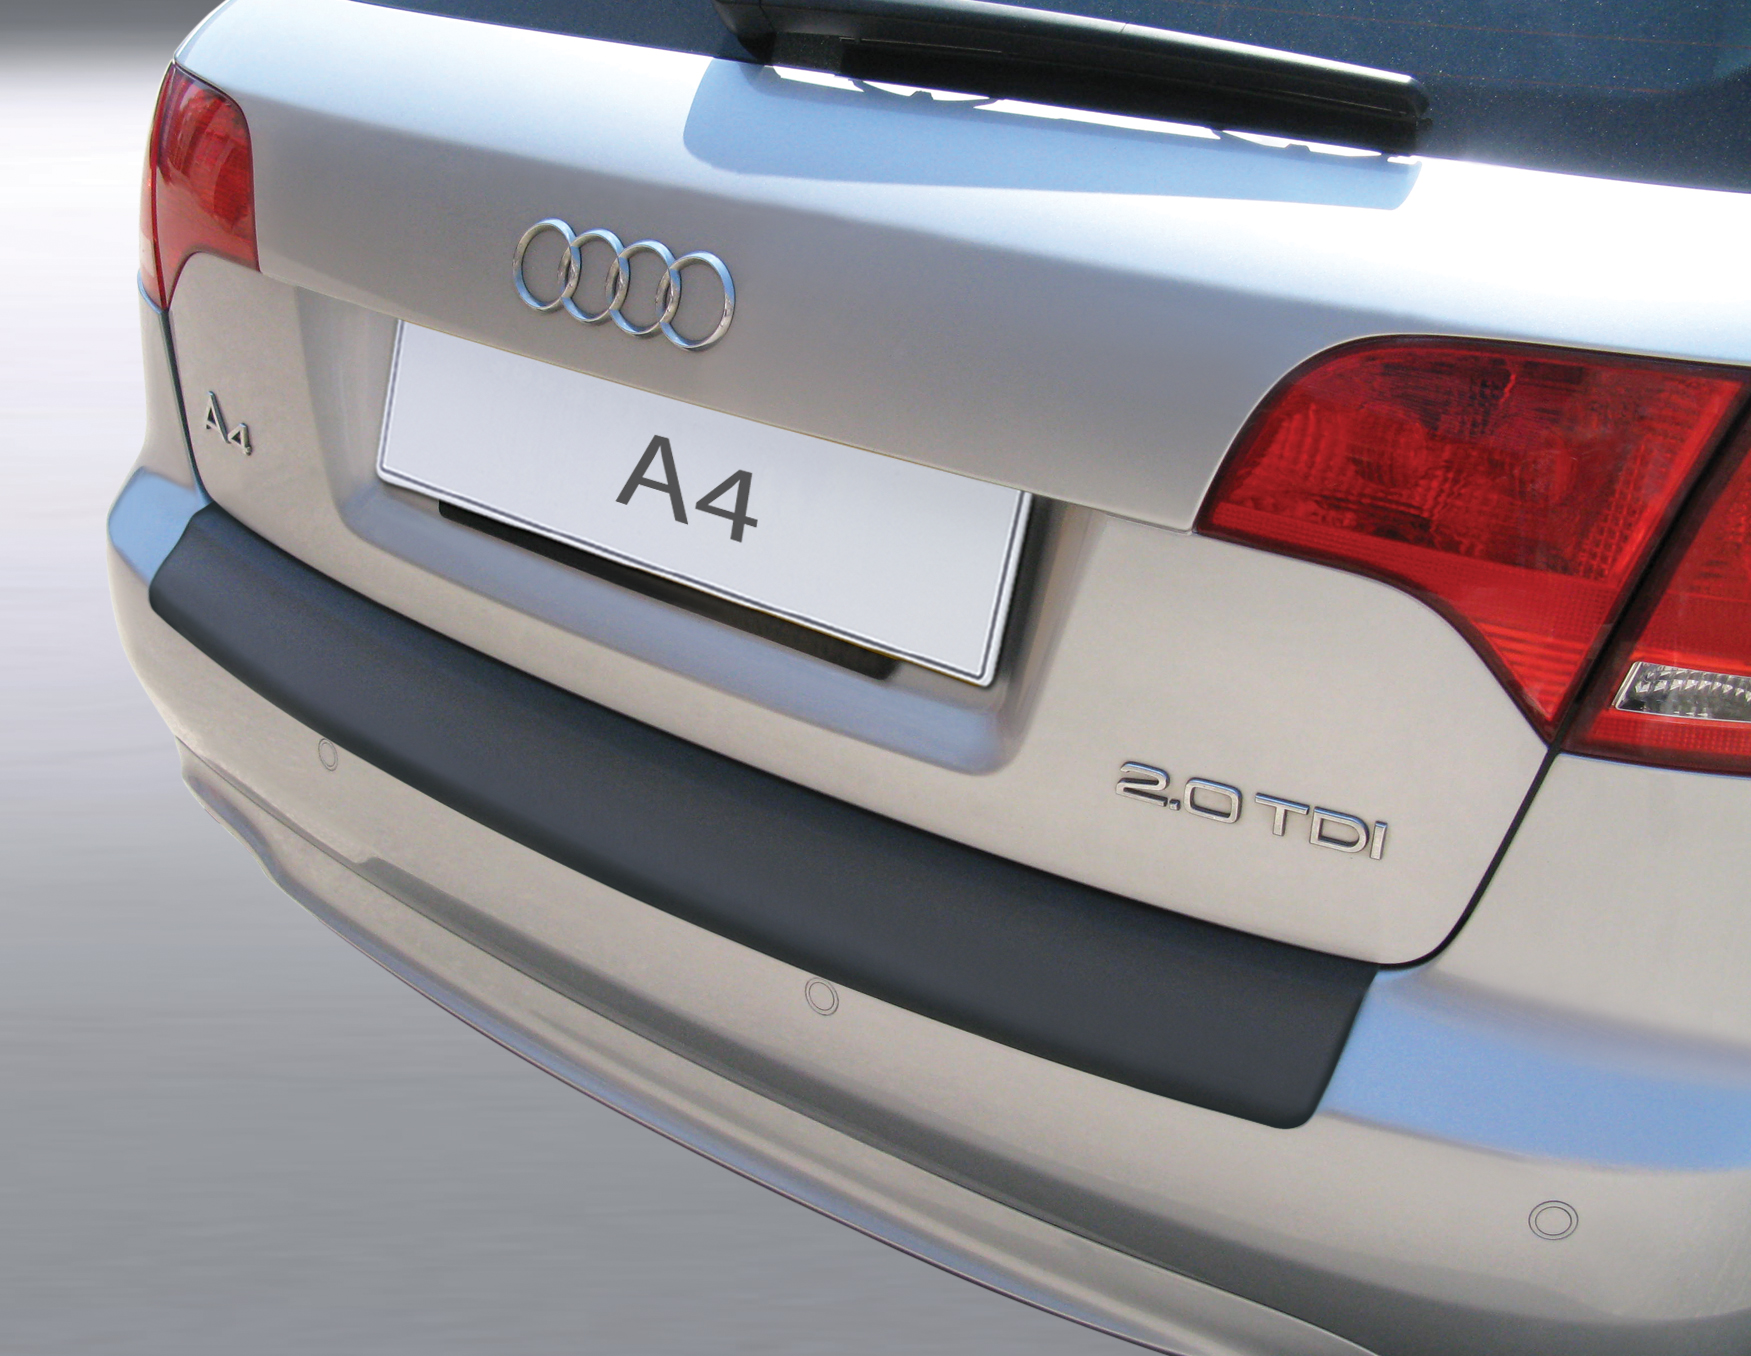 Ladekantenschutz mit Abkantung passend für Audi A4 Avant B7 für alle  Modelle inkl. S line ab BJ. 09.2004 bis 03.2008 (nicht für S4/RS4) ABS  Farbe schwarz